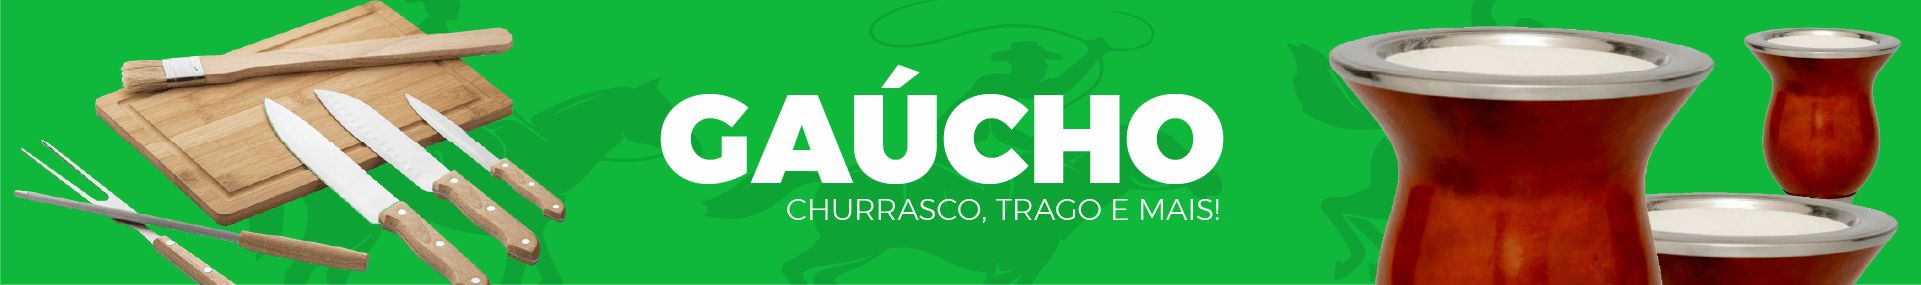 Gaucho Banner